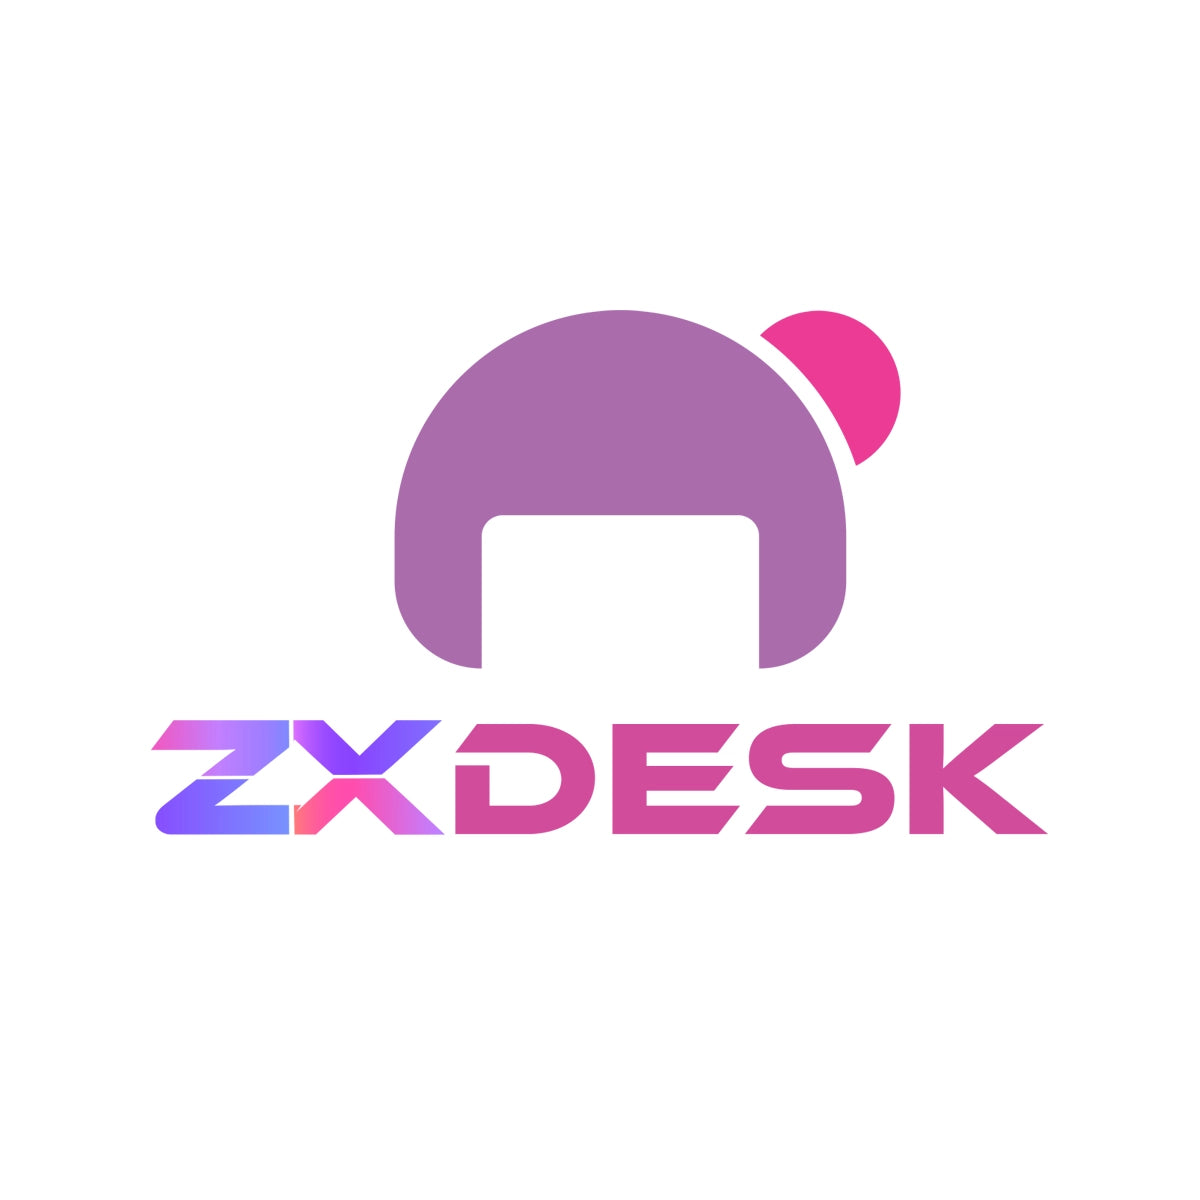 zxdesk.com